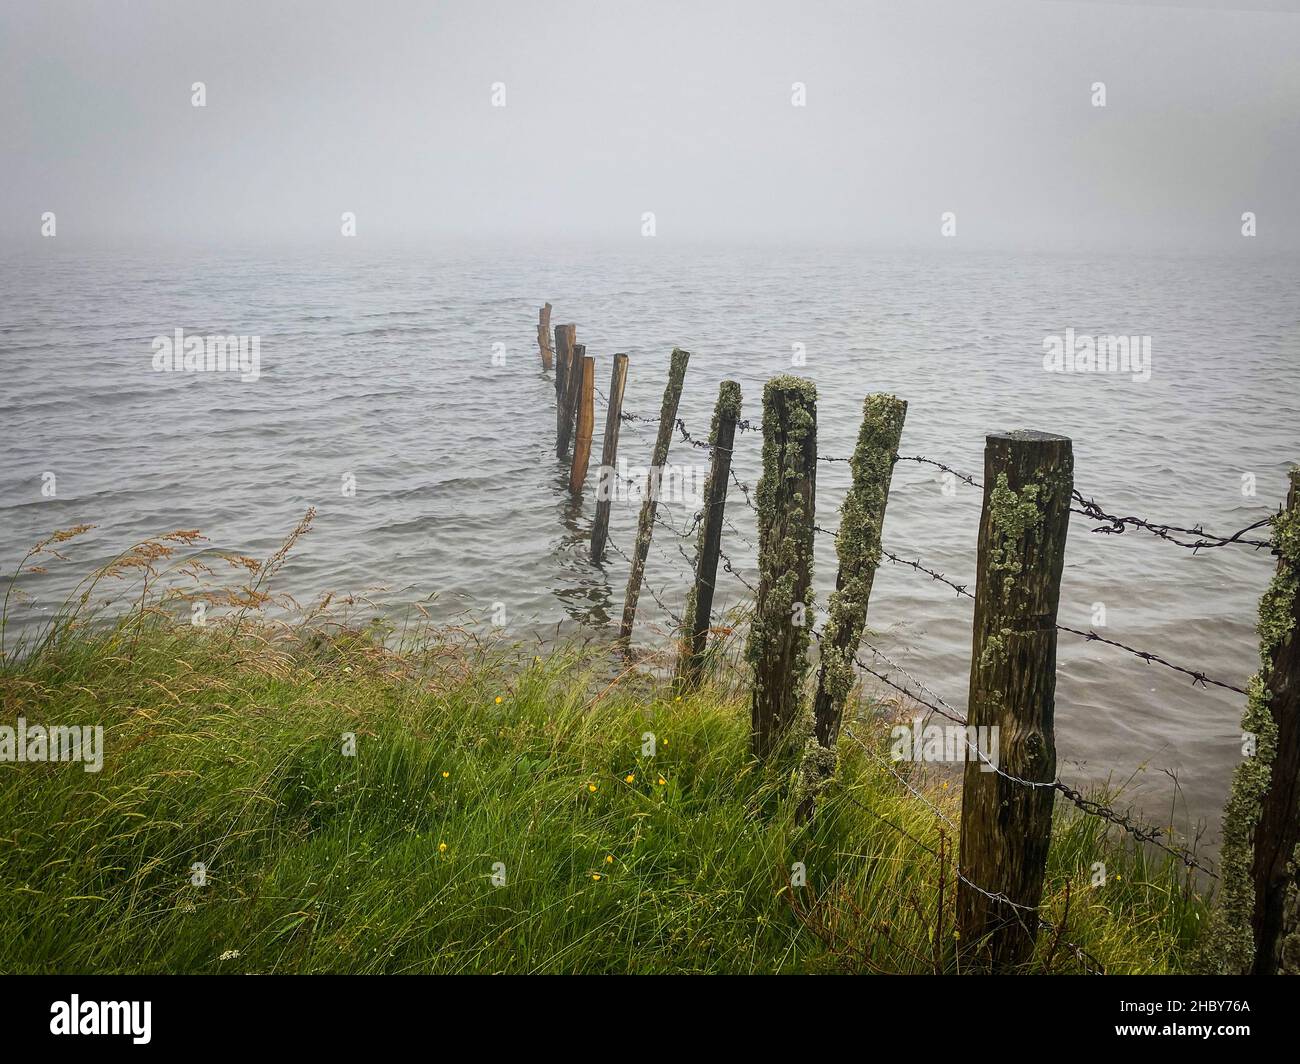 Brume matinale sur le lac de Servieres, certaines clôtures en bois poste dans l'eau, Puy de Dome, auvergne, France Banque D'Images